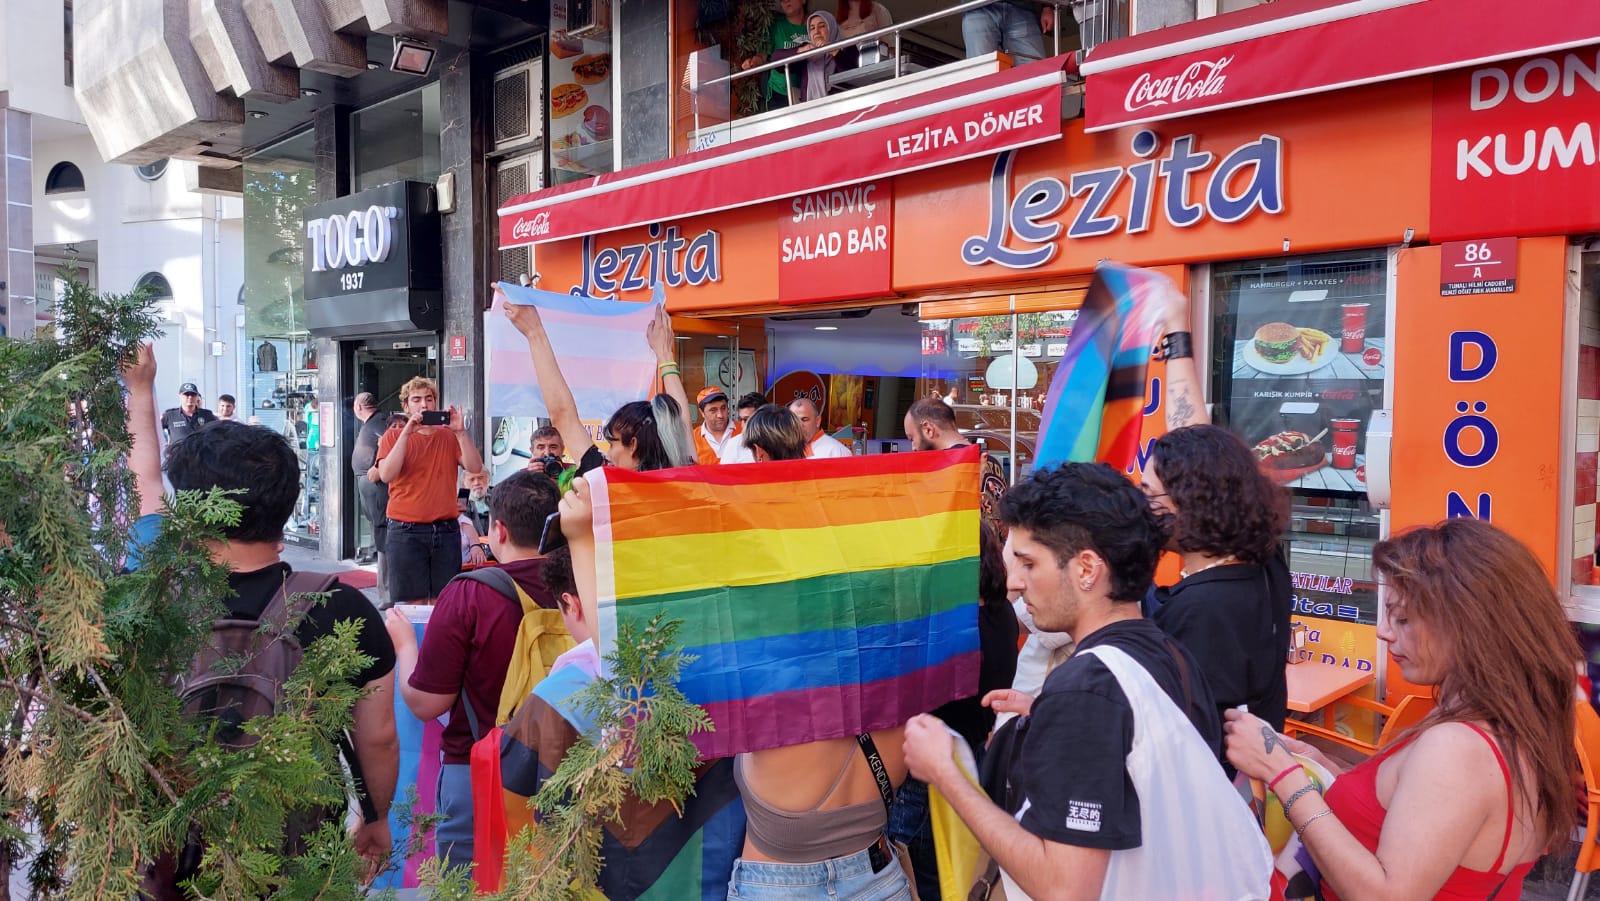 2.Ankara Onur Yürüyüşü davasında bilirkişi raporu, polis işkencesini ortaya koydu Kaos GL - LGBTİ+ Haber Portalı